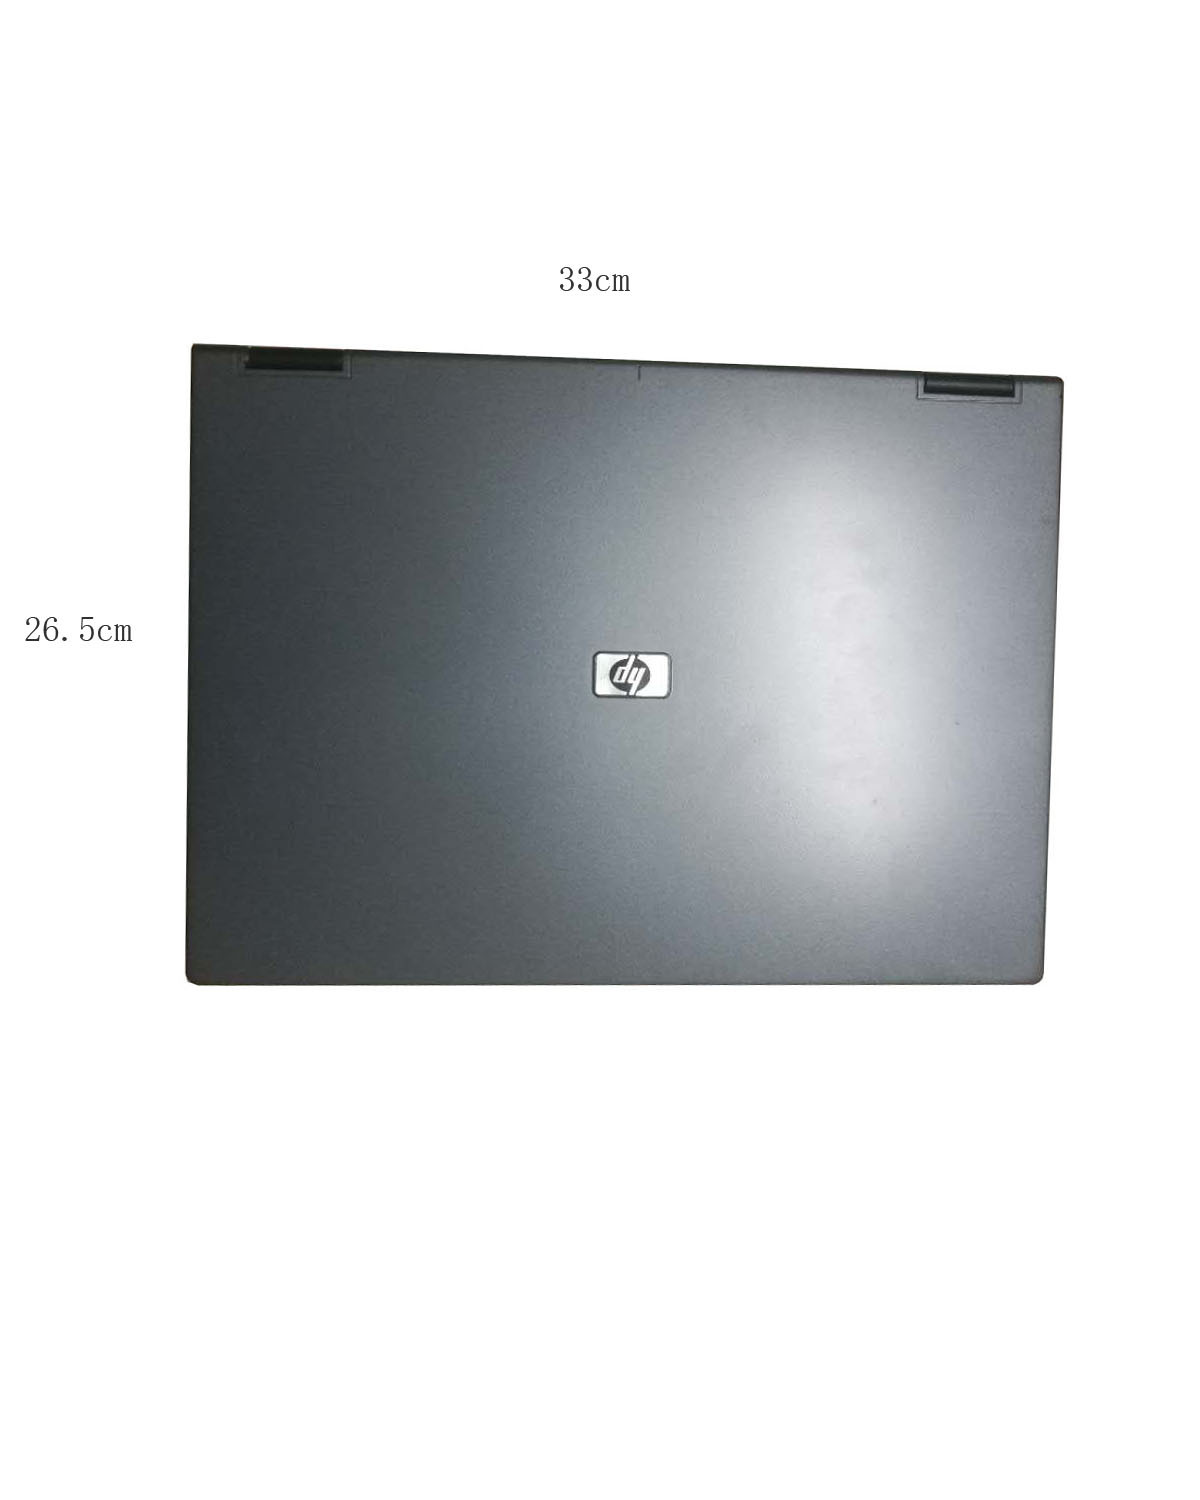 6310 Dual Core 15 Inch Laptop Gift Compu...